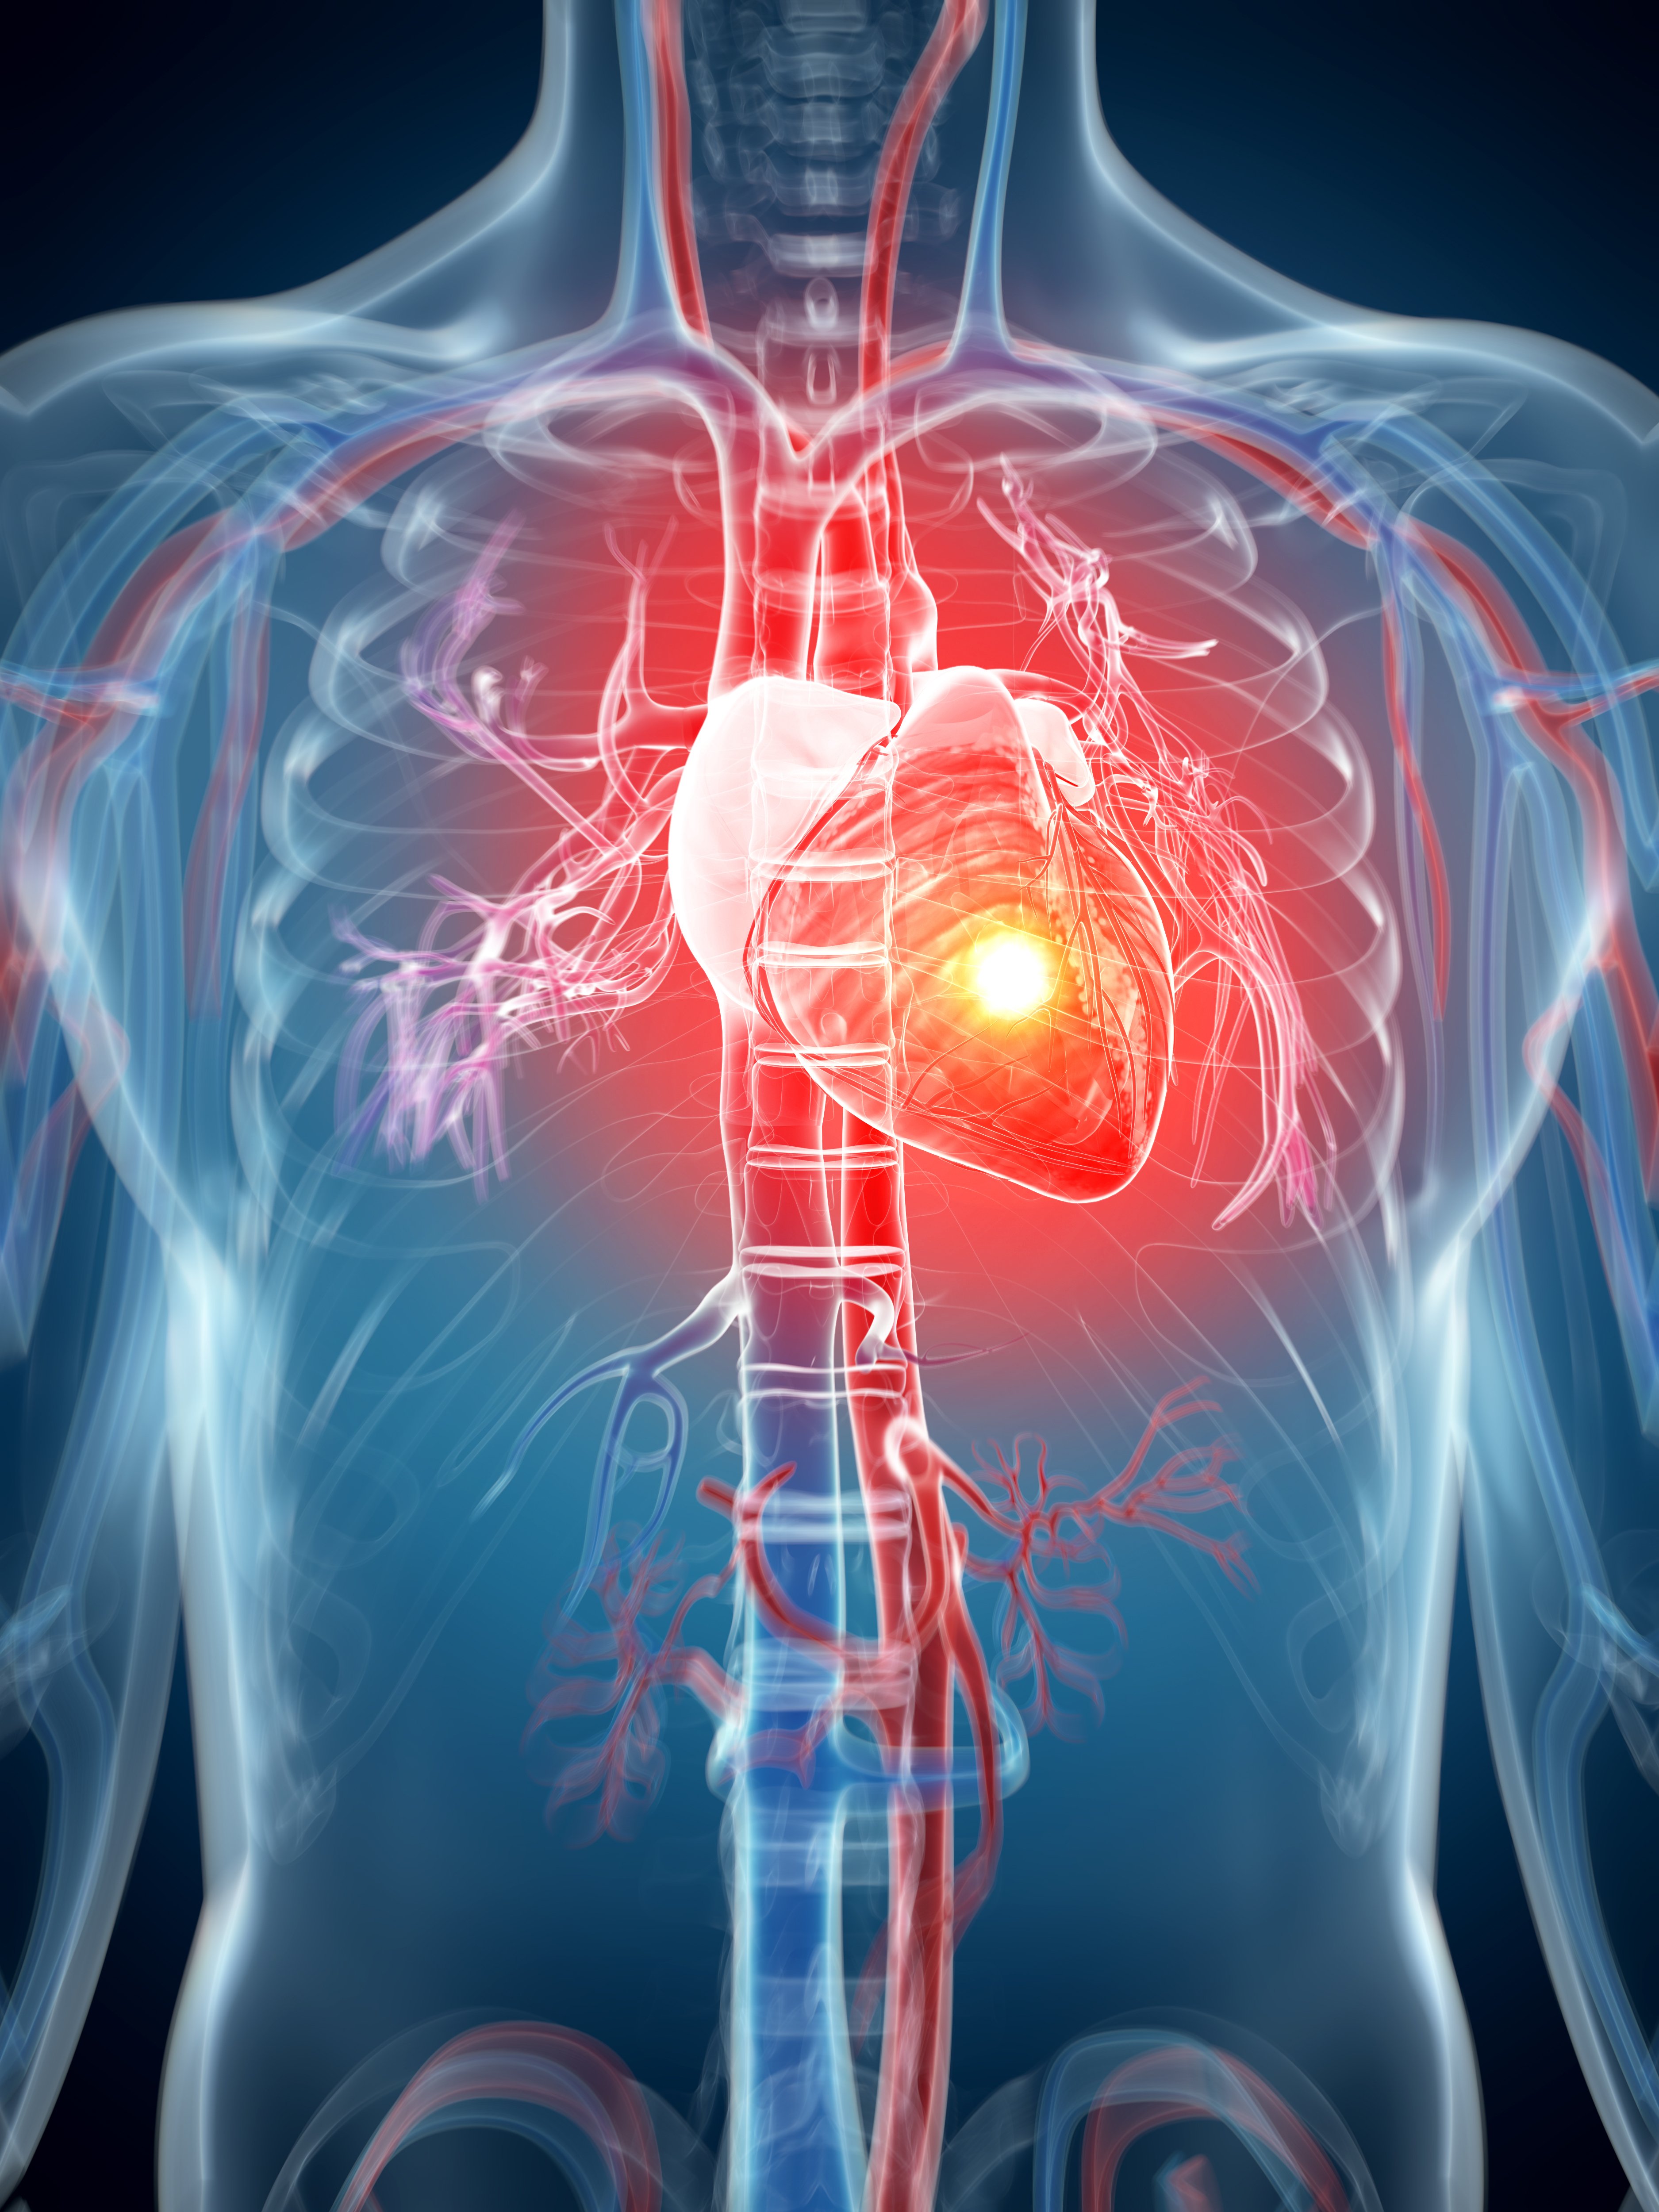 Sudoración, dolor en el pecjp y dificultad para respirar, son algunos de los síntomas de ataque al corazón. | Foto: Shutterstock